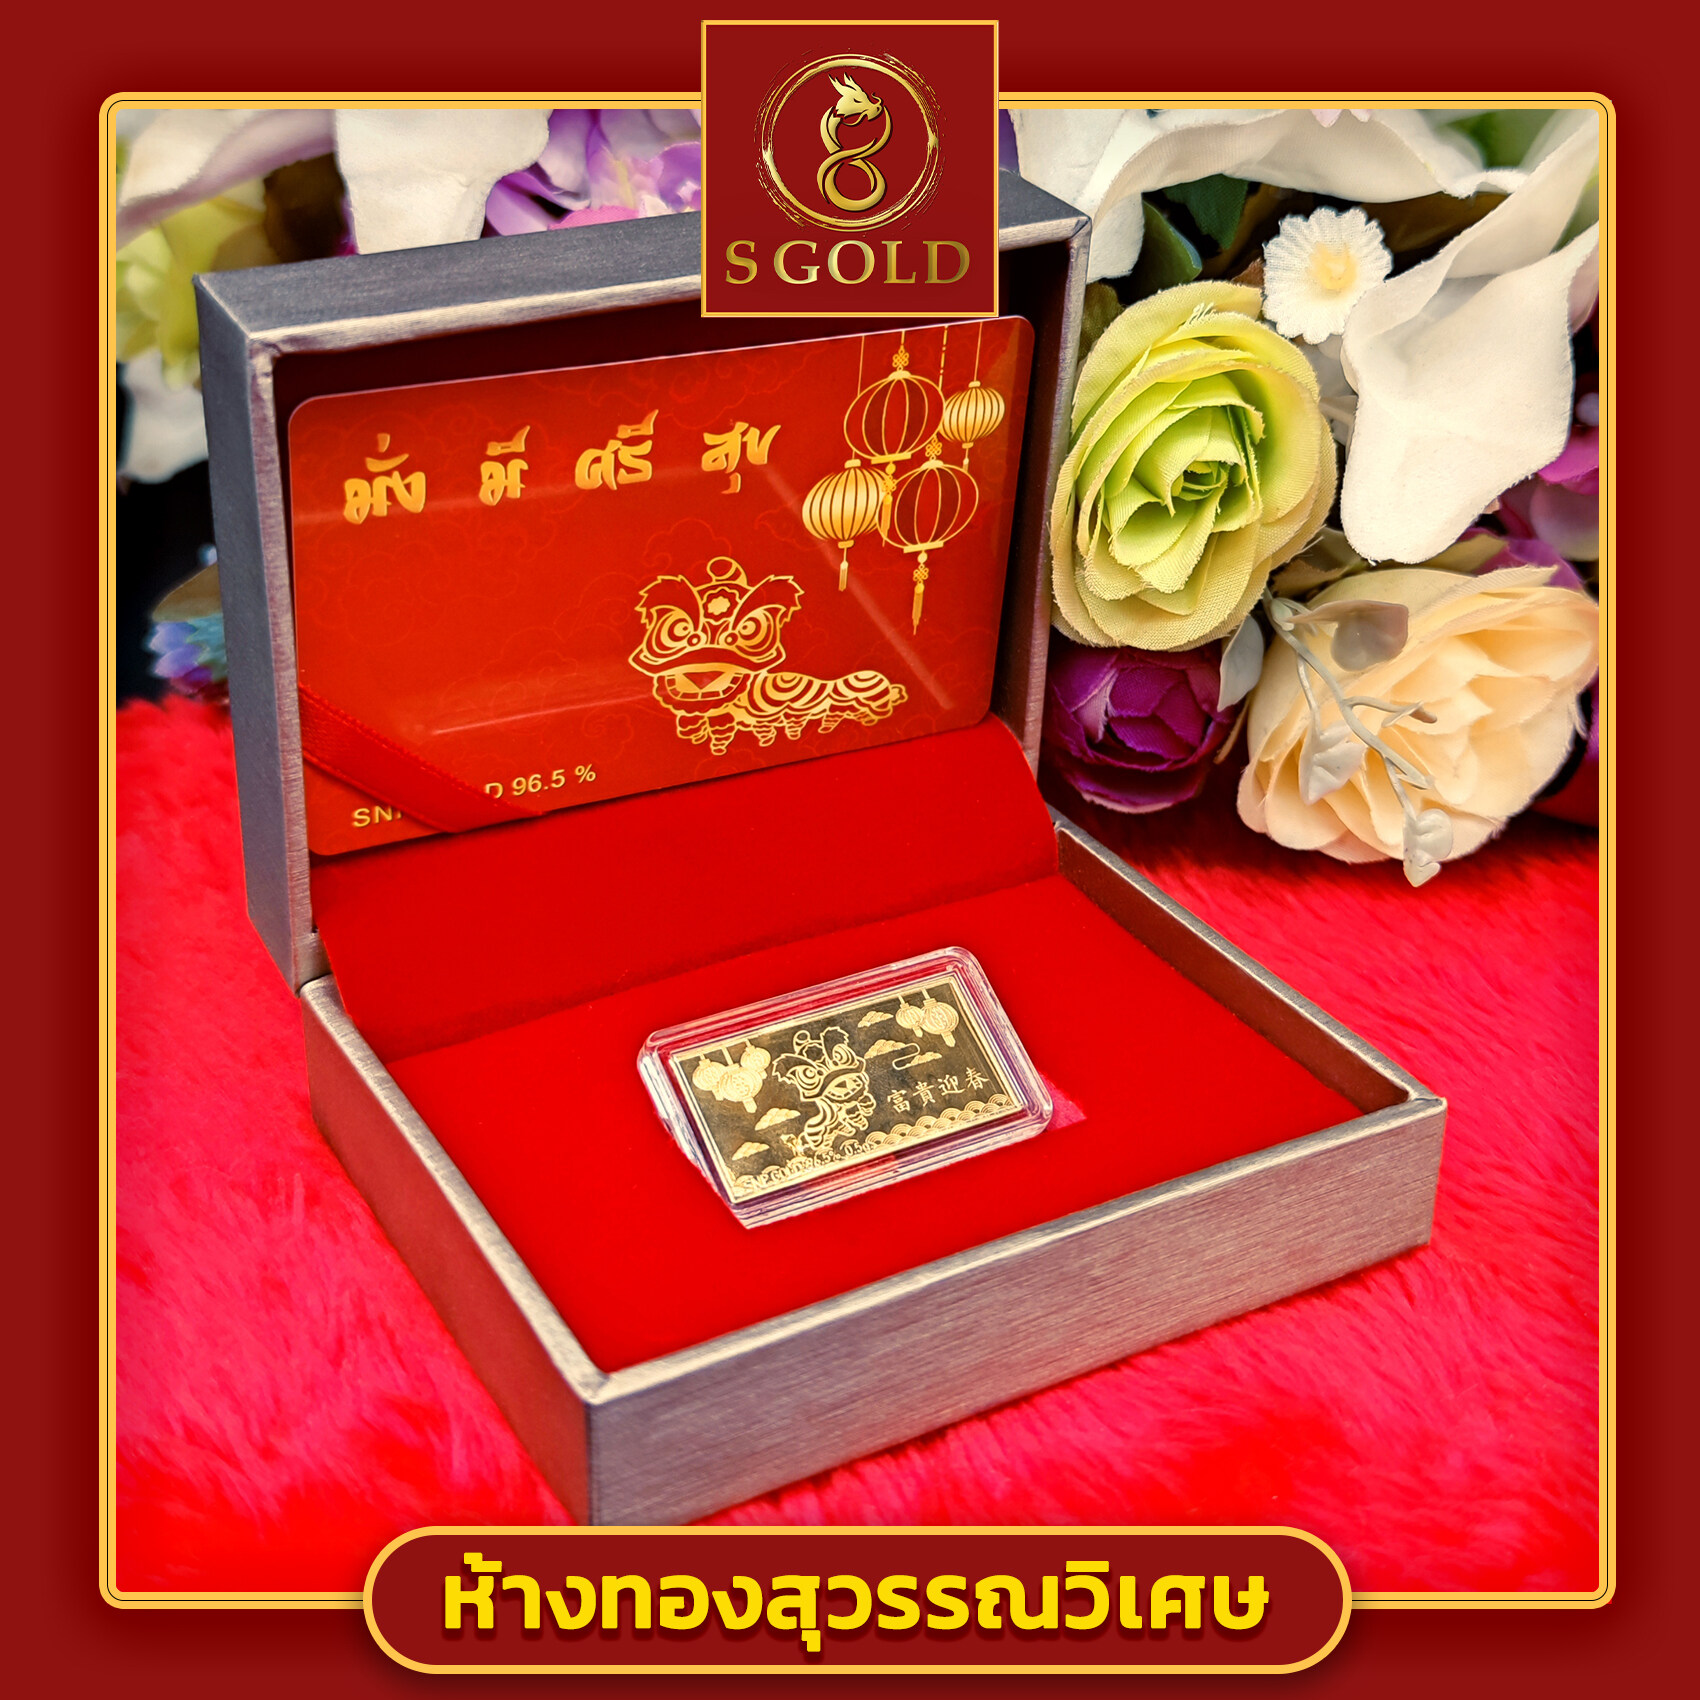 โปรโมชั่น Flash Sale : S-Gold ทองคำแท่ง96.5% น้ำหนัก 0.5 กรัม มั่งมีศรีสุข // S-Gold // Gift Box "DRAGON" Real Gold Bar // 96.5% Thai Gold // weight 0.5 gram